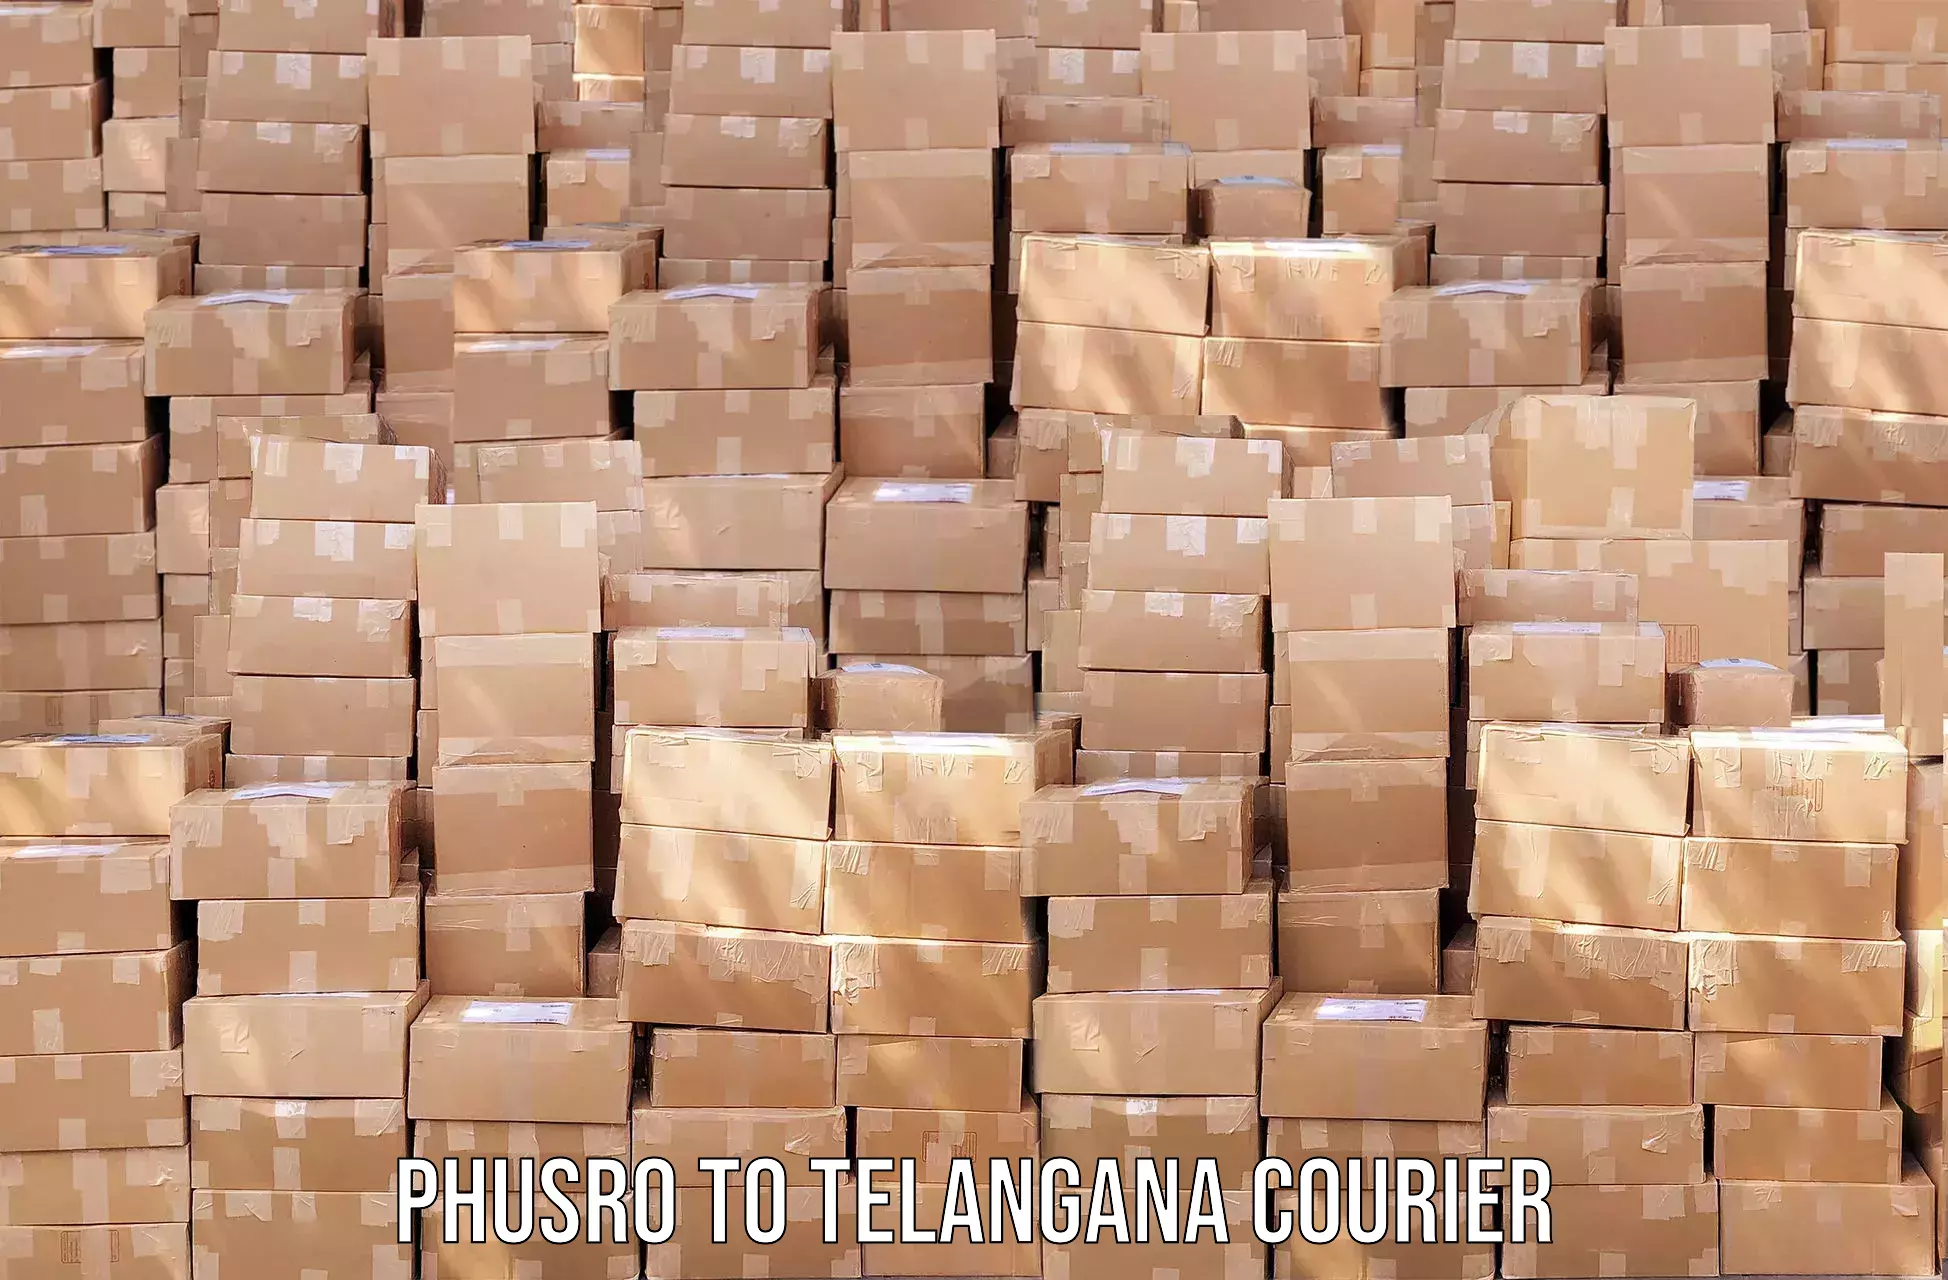 Regular parcel service in Phusro to Warangal